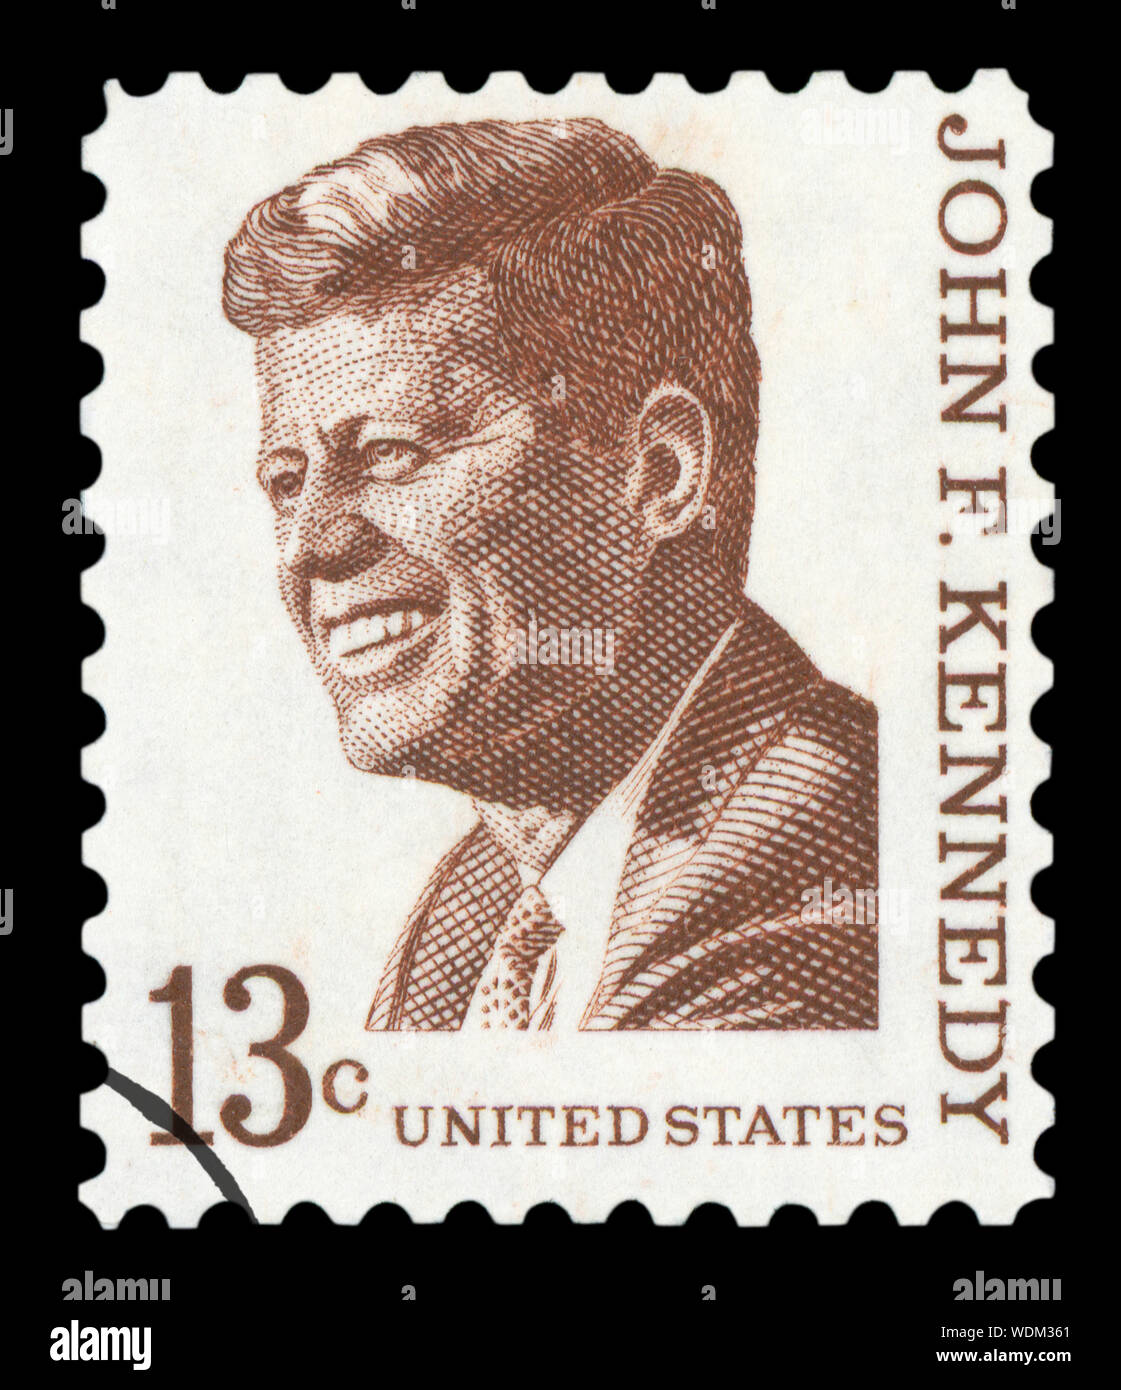 Vereinigte STAATEN VON AMERIKA - ca. 1967: einen gebrauchten Briefmarke in den Vereinigten Staaten gedruckt zeigt ein Porträt des Präsidenten John Fitzgerald Kennedy Stockfoto